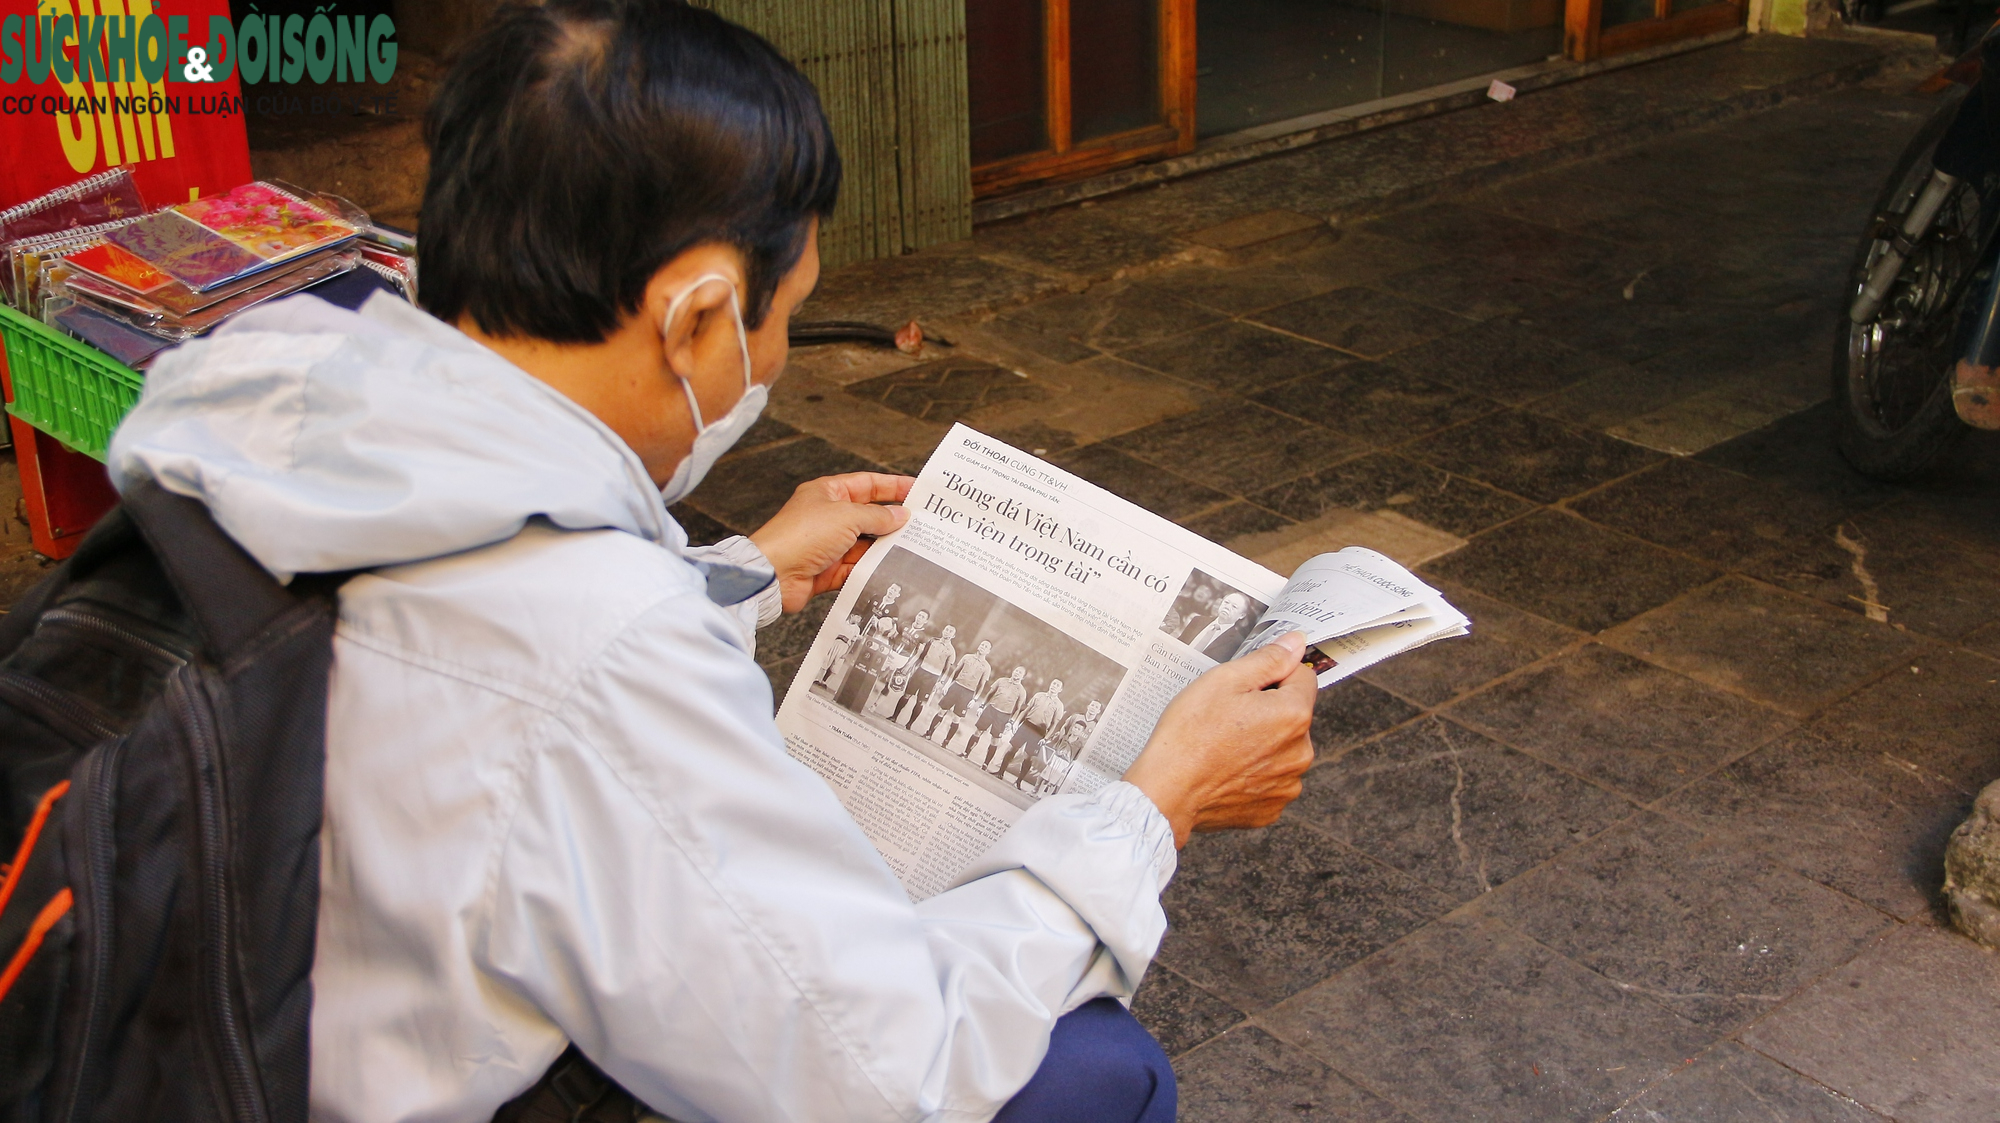 &quot;Ngắm nghía&quot; những sạp báo giấy, nơi lưu giữ văn hóa Hà Nội xưa - Ảnh 4.